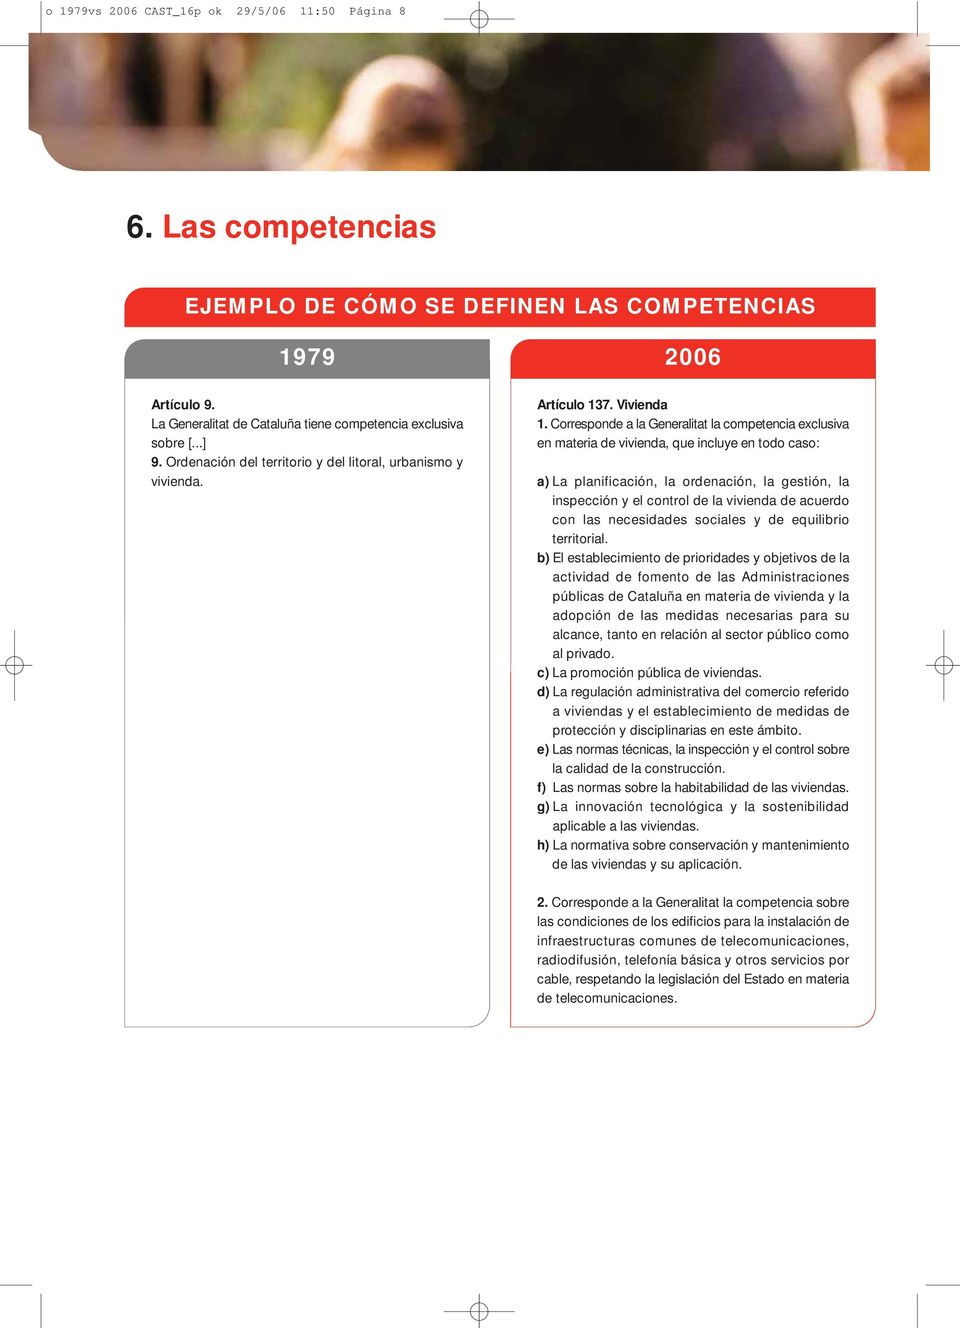 Corresponde a la Generalitat la competencia exclusiva en materia de vivienda, que incluye en todo caso: a) La planificación, la ordenación, la gestión, la inspección y el control de la vivienda de